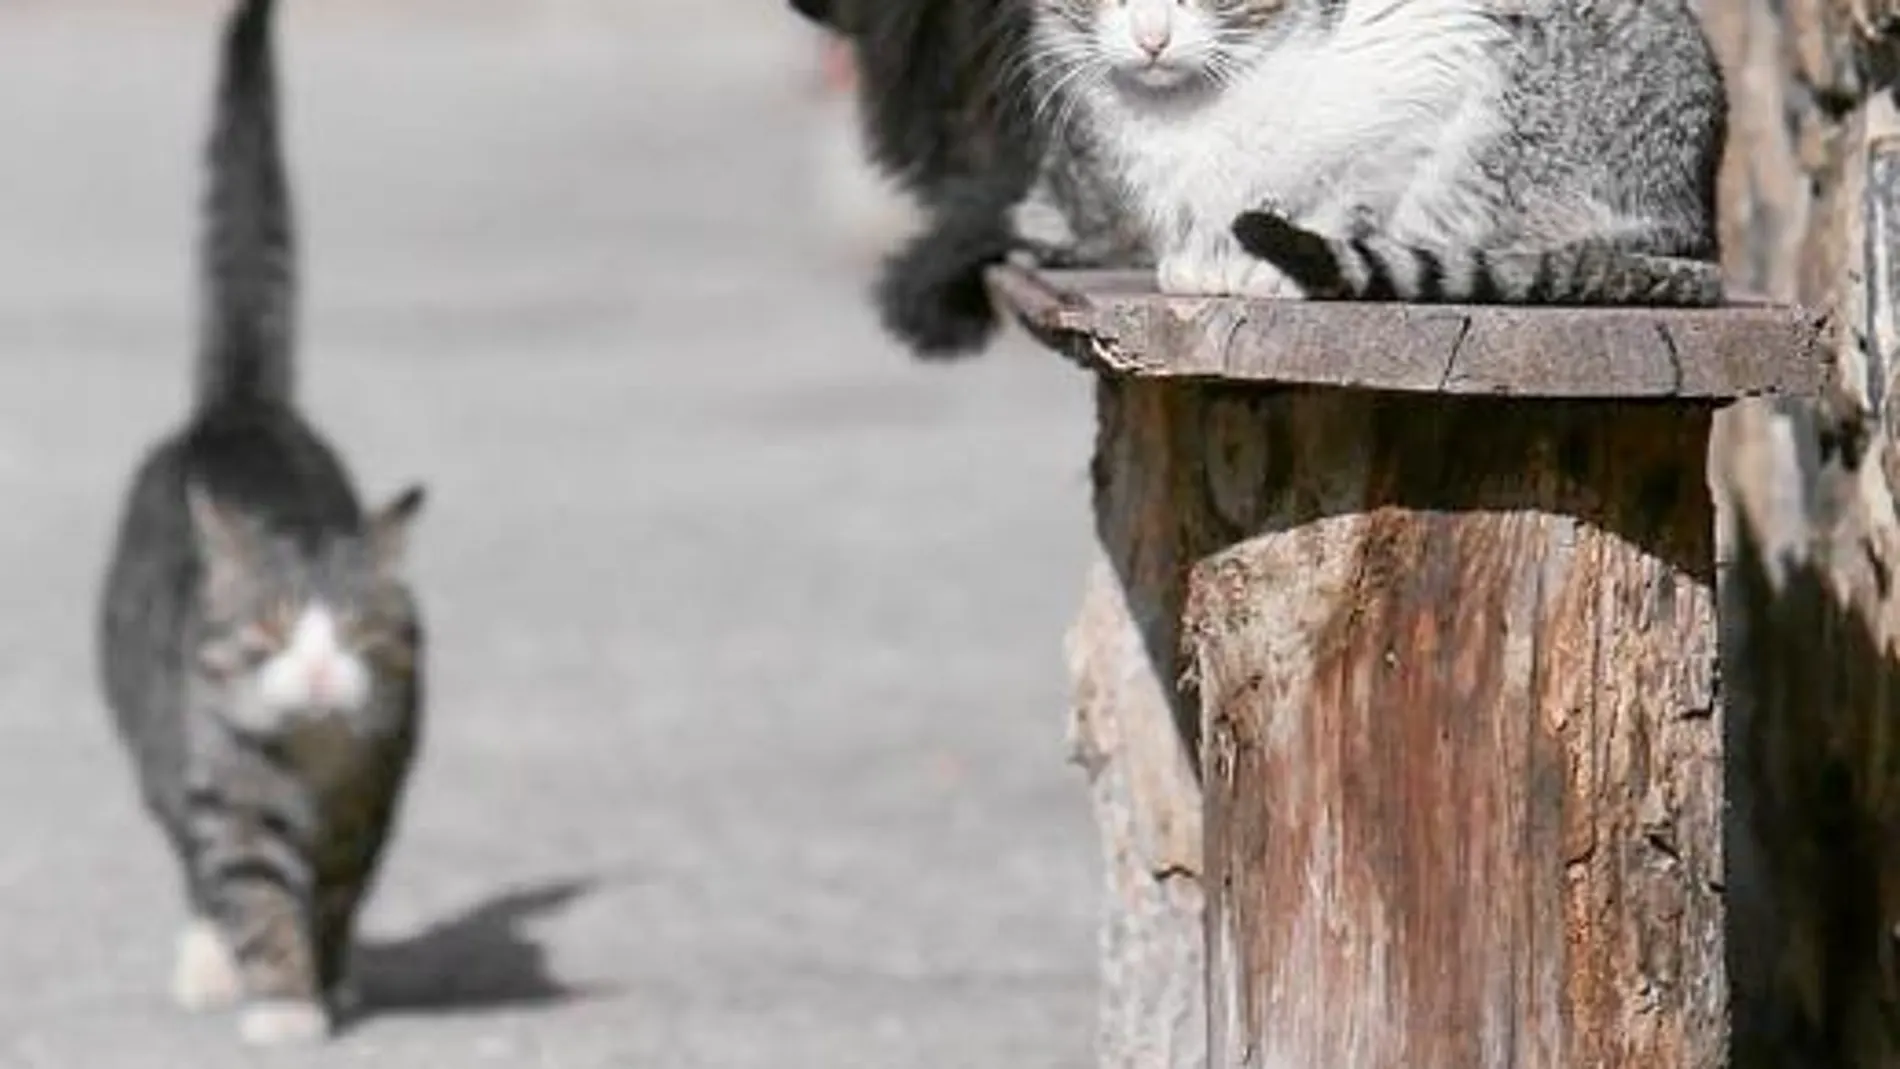 Los felinos callejeros tienen una esperanza de vida de tan sólo dos años. Mientras que los que viven en casas, pueden alcanzar los 18 años